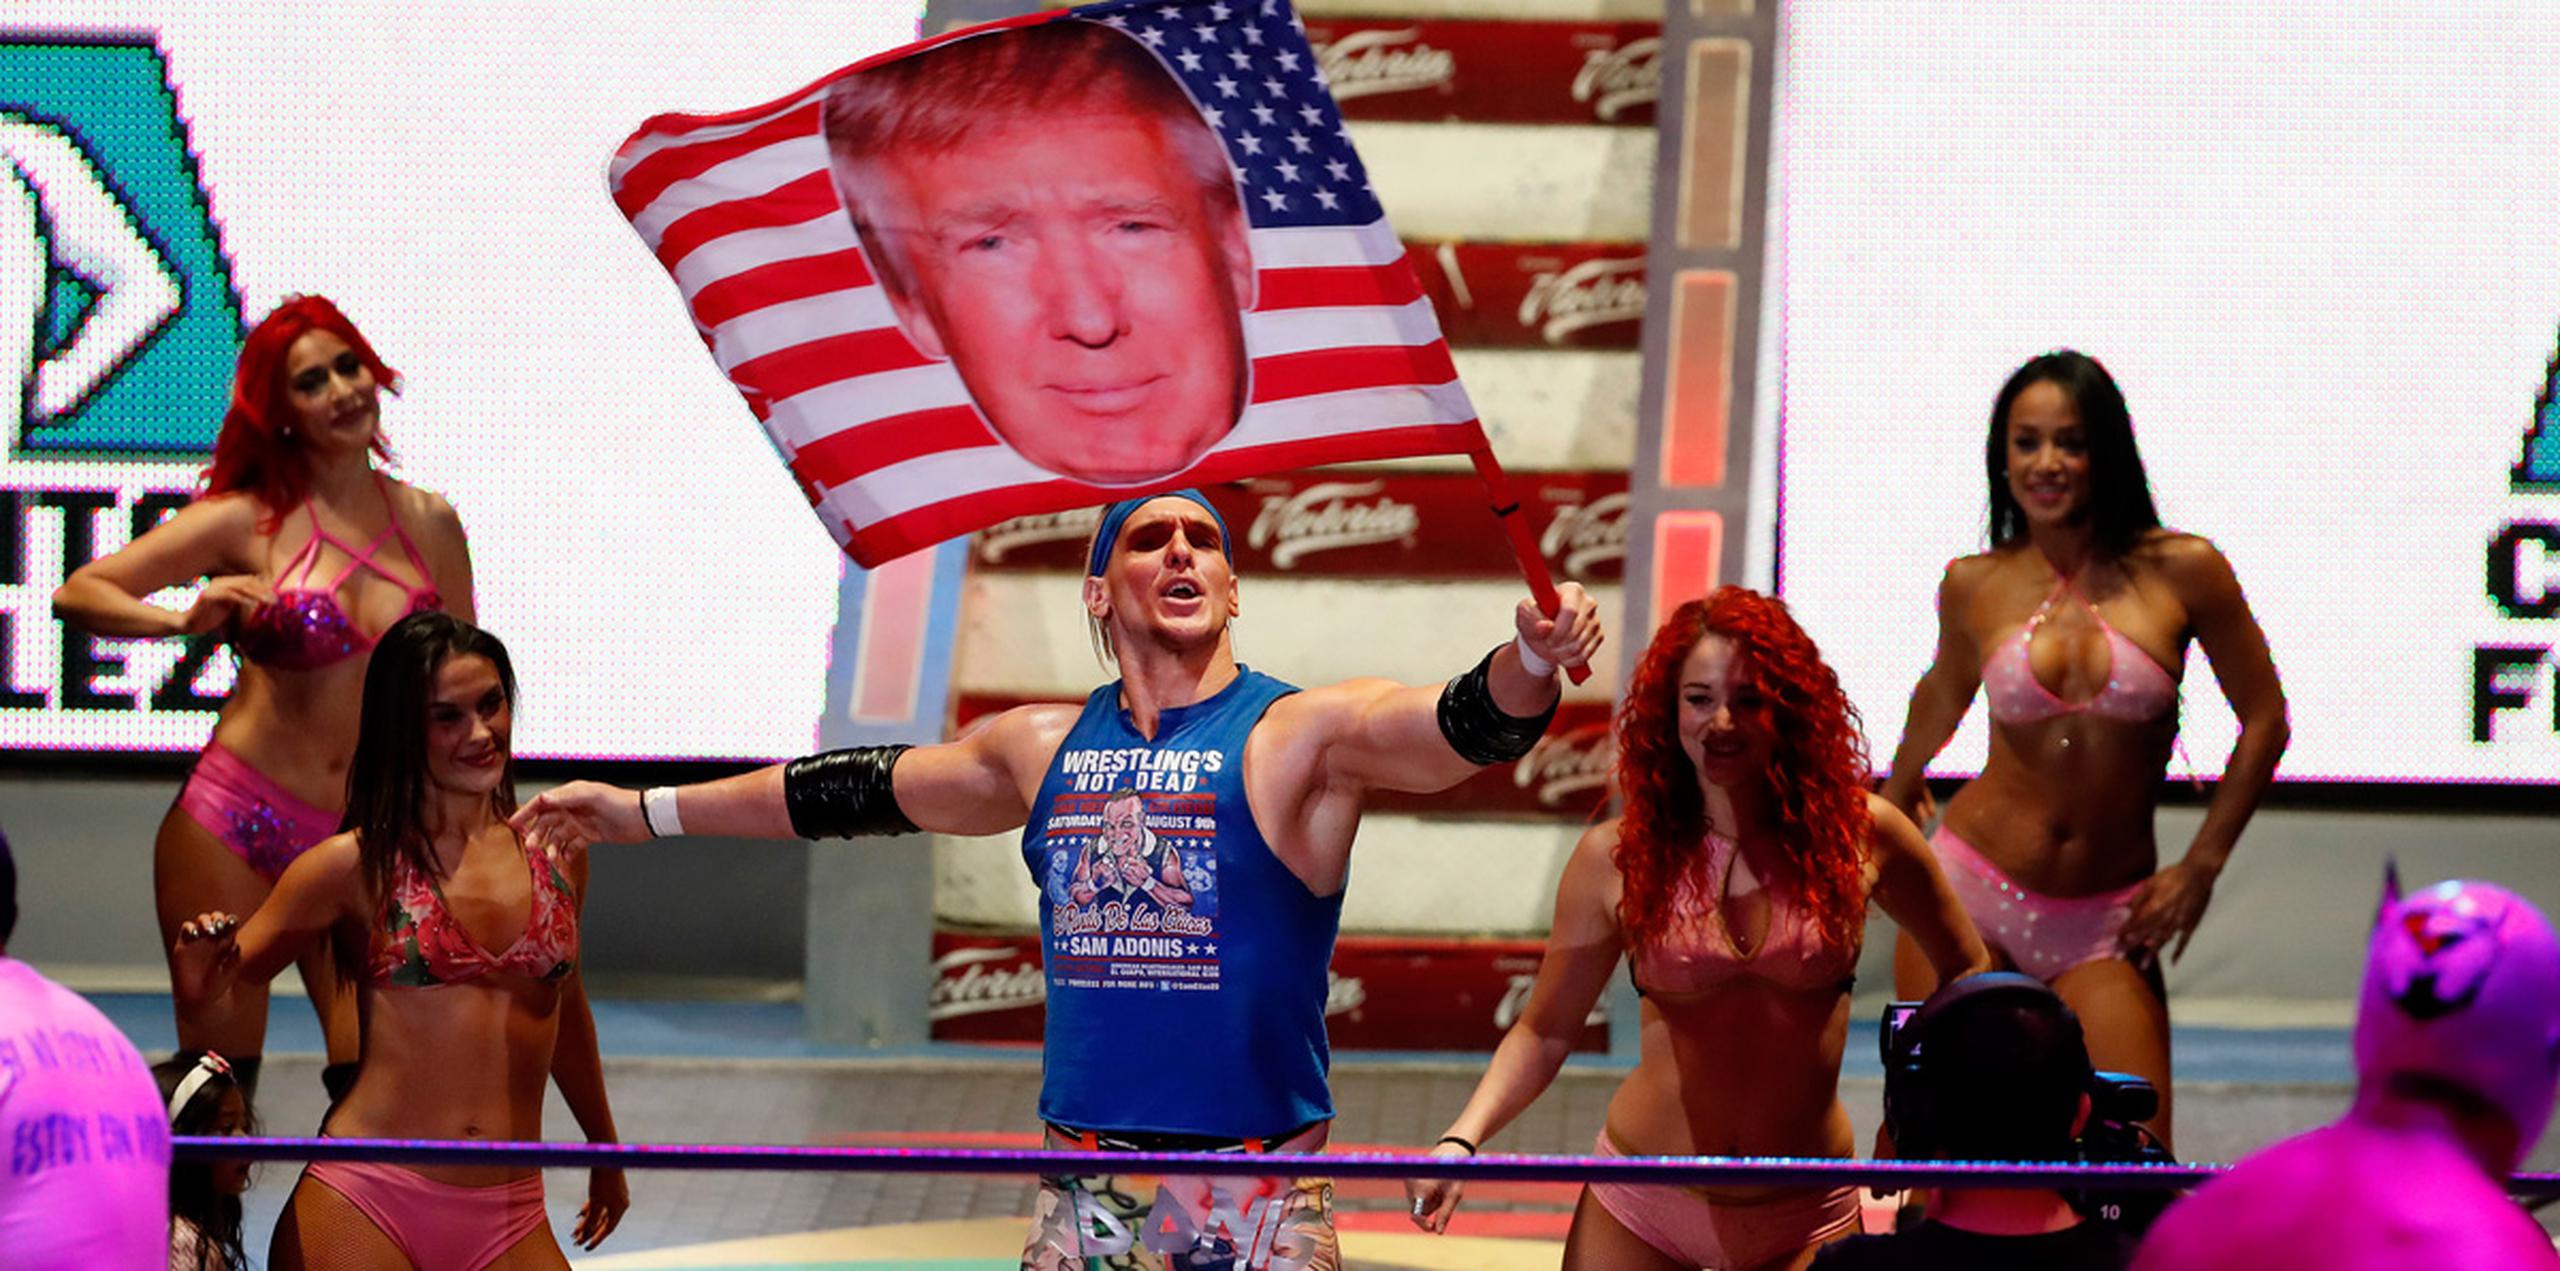 La multitud en la Arena México de la capital estalla en gritos, abucheos, burlas y chiflidos sarcásticos mientras Adonis aparece con un bronceado anaranjado, al estilo Trump, y el cabello rubio mientras agita una bandera estadounidense que tiene una foto de Trump. (AP)